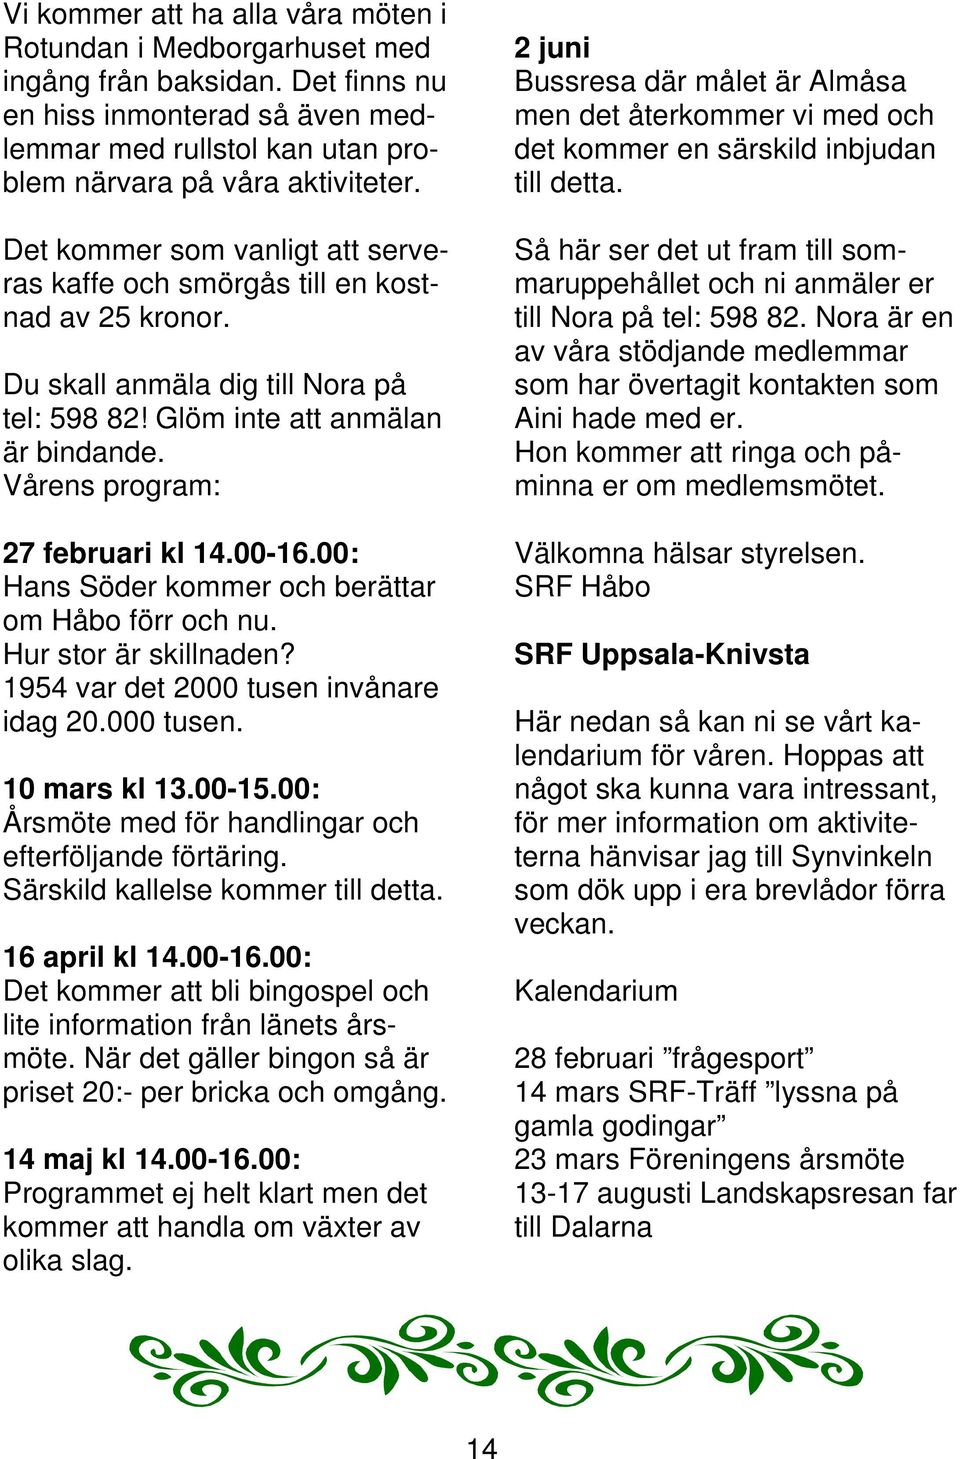 00-16.00: Hans Söder kommer och berättar om Håbo förr och nu. Hur stor är skillnaden? 1954 var det 2000 tusen invånare idag 20.000 tusen. 10 mars kl 13.00-15.